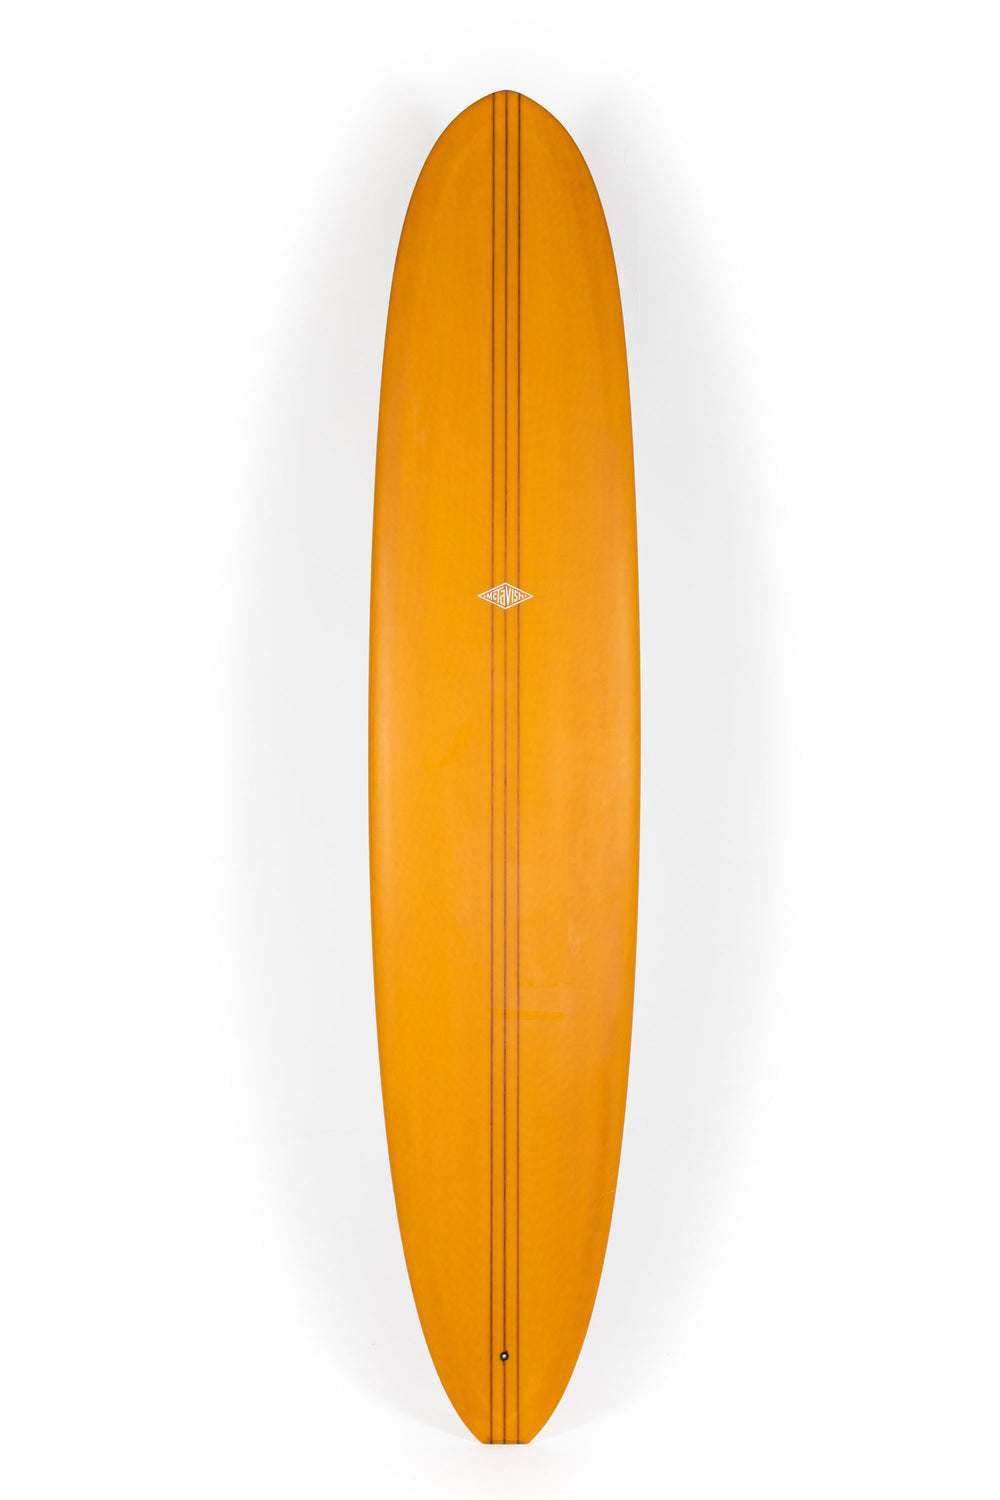 Pukas Surf Shop - McTavish Surfboard - THE DIRT NAP by Bob McTavish - 9'5